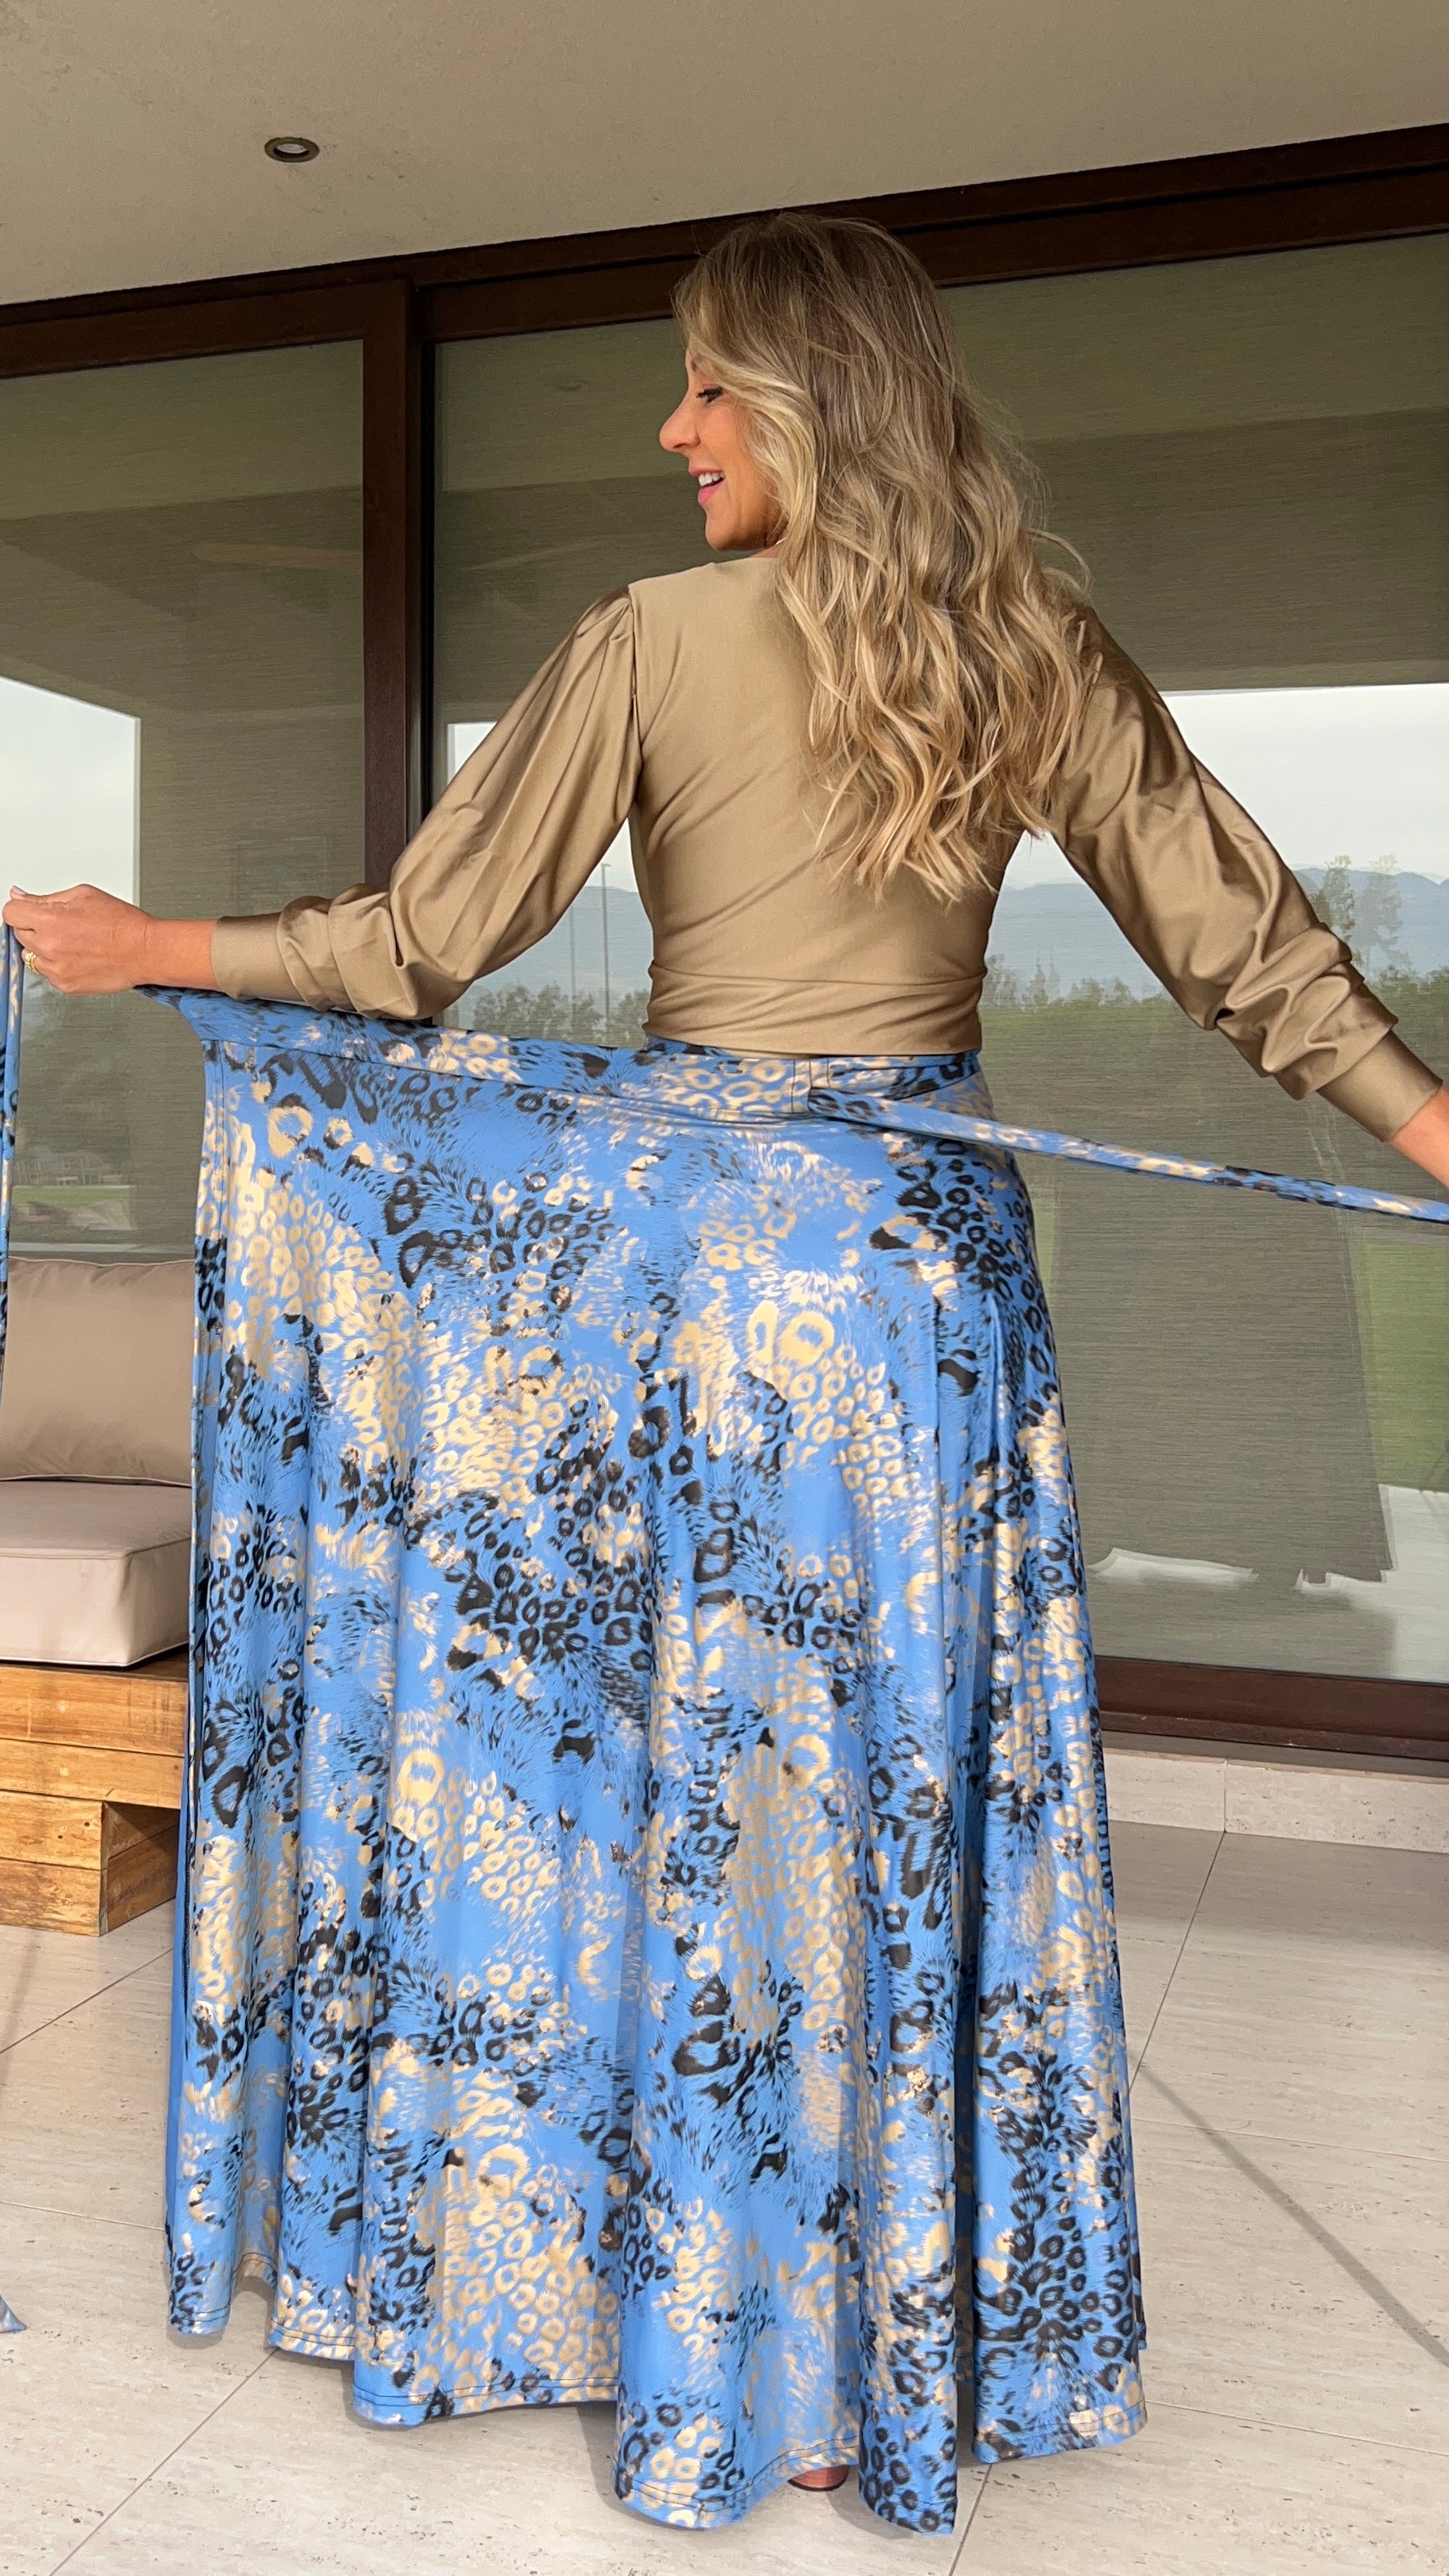 Falda envolvente Dupont print azul lavanda y dorado| falda pareo print fiesta| Amoramar.cl 2